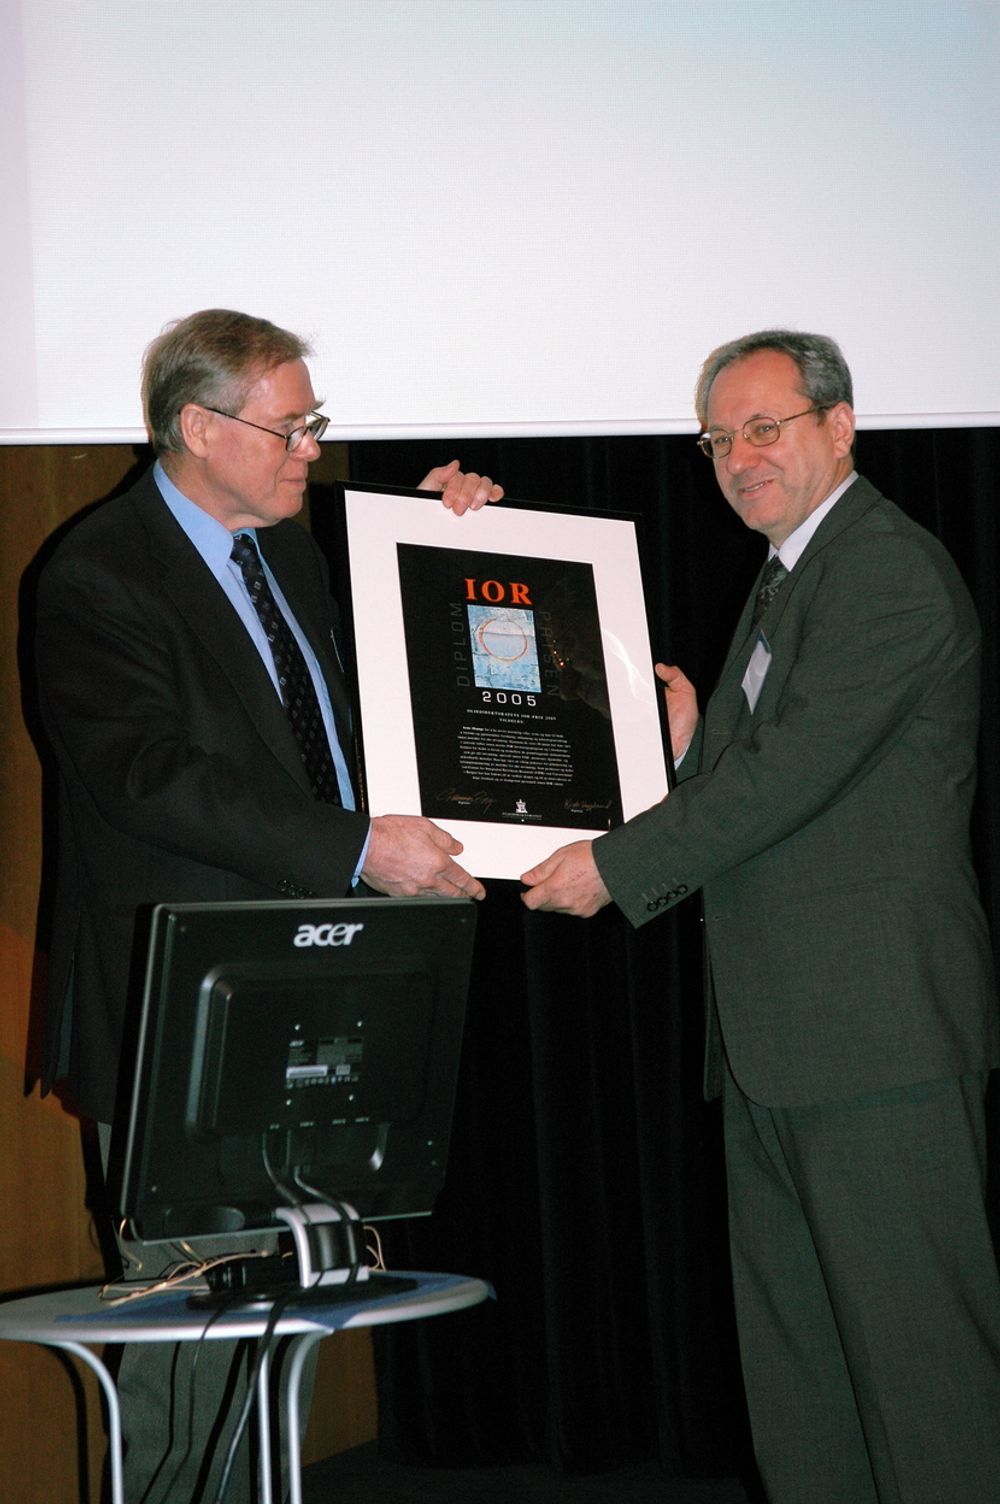 VELFORTJENT: Gunnar Berge overrekker IOR-prisen for 2005 til Arne Skauge.